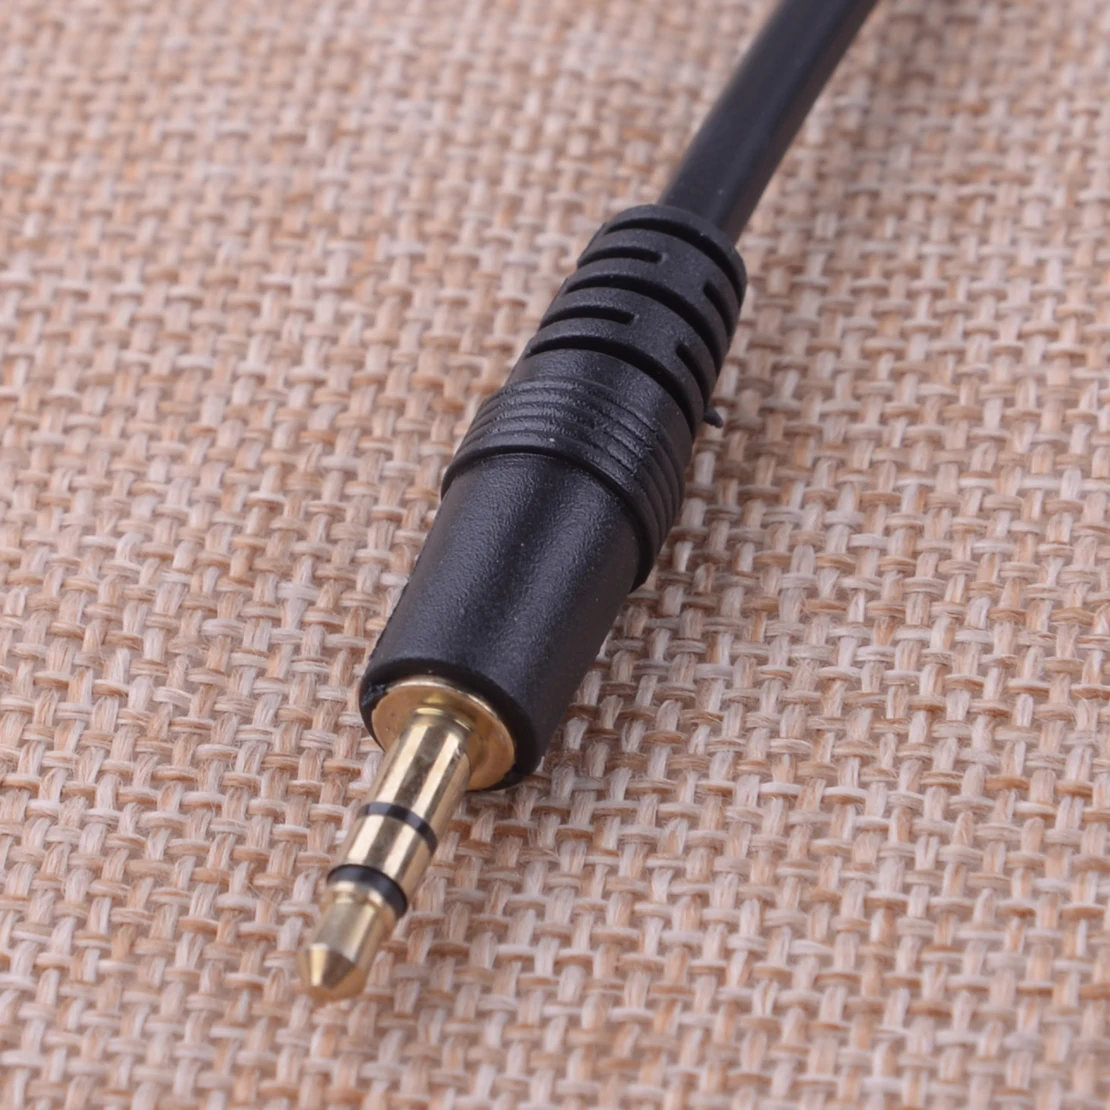 CITALL 14 Pin Bluetooth аудио AUX кабель-адаптер разъем подходит для Volvo C30 S40 V40 V50 S60 S70 C70 V70 XC70 S80 XC 90